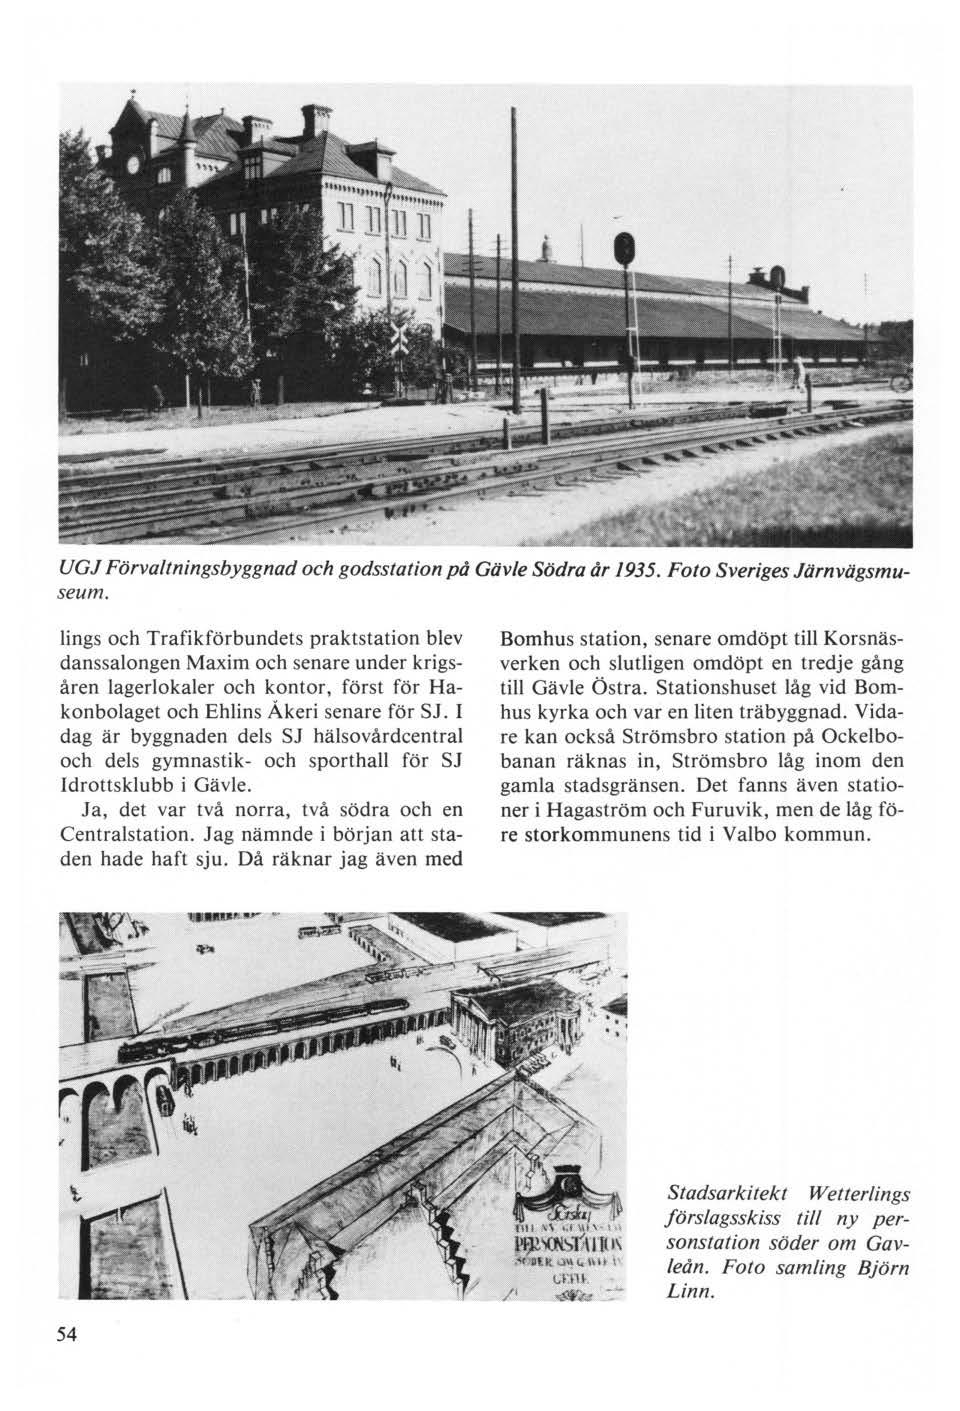 UGJ Förvaltningsbyggnad och godsstation på Gävle Södra år 1935. Foto Sveriges Järnvägsmuseum.